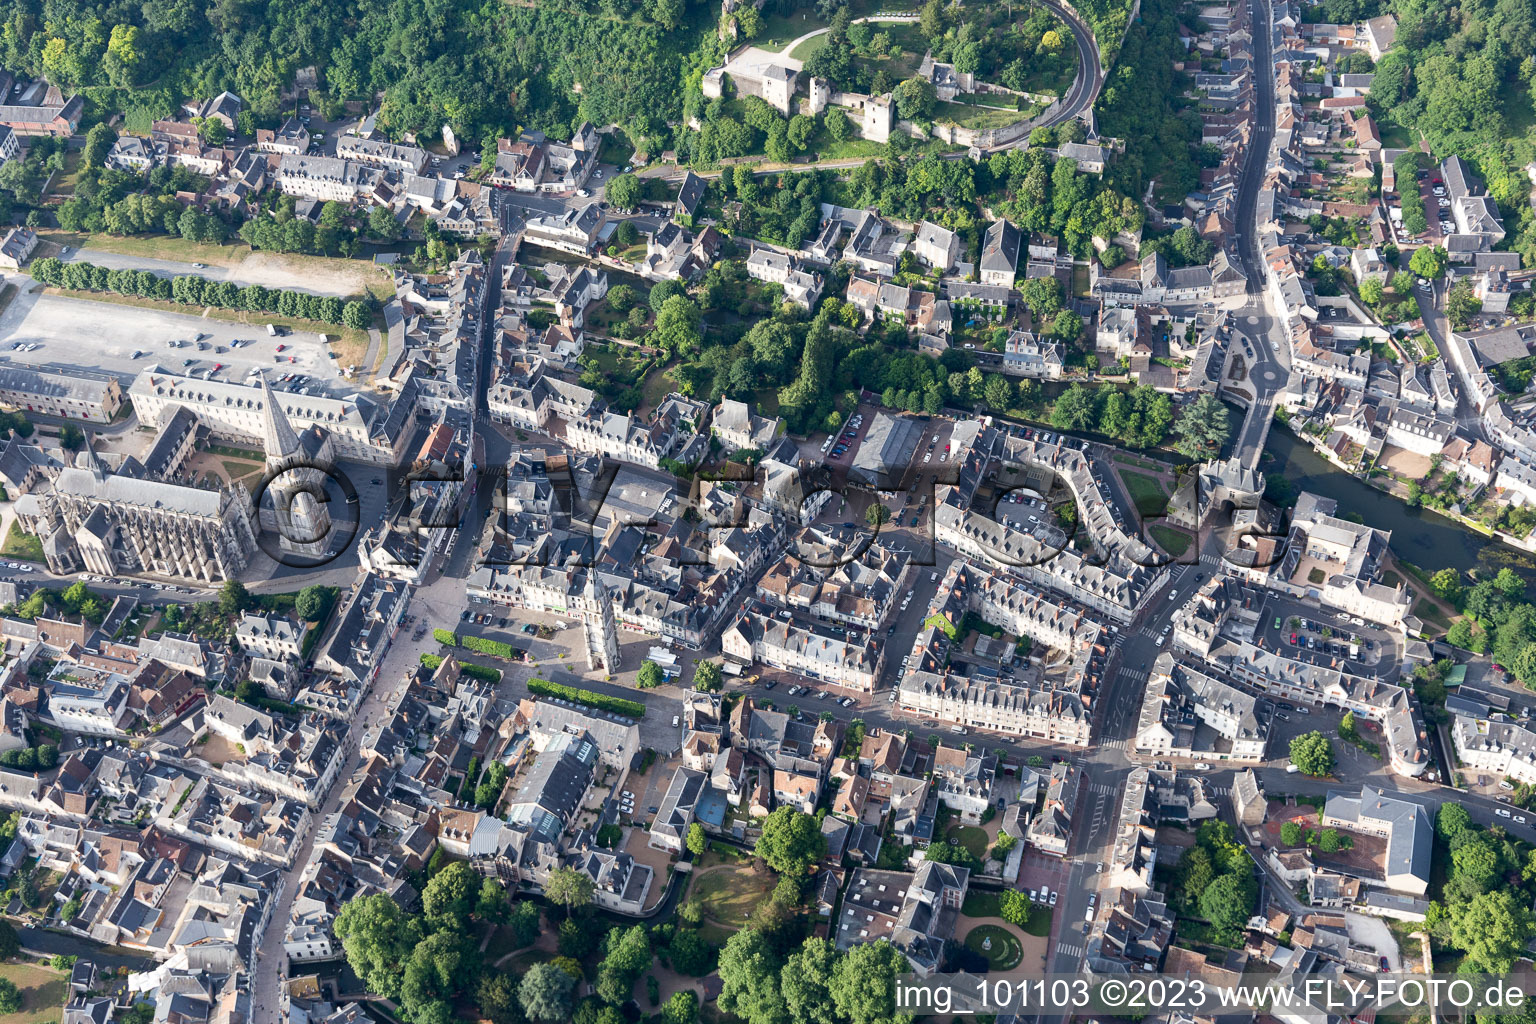 Vendôme im Bundesland Loir-et-Cher, Frankreich von der Drohne aus gesehen